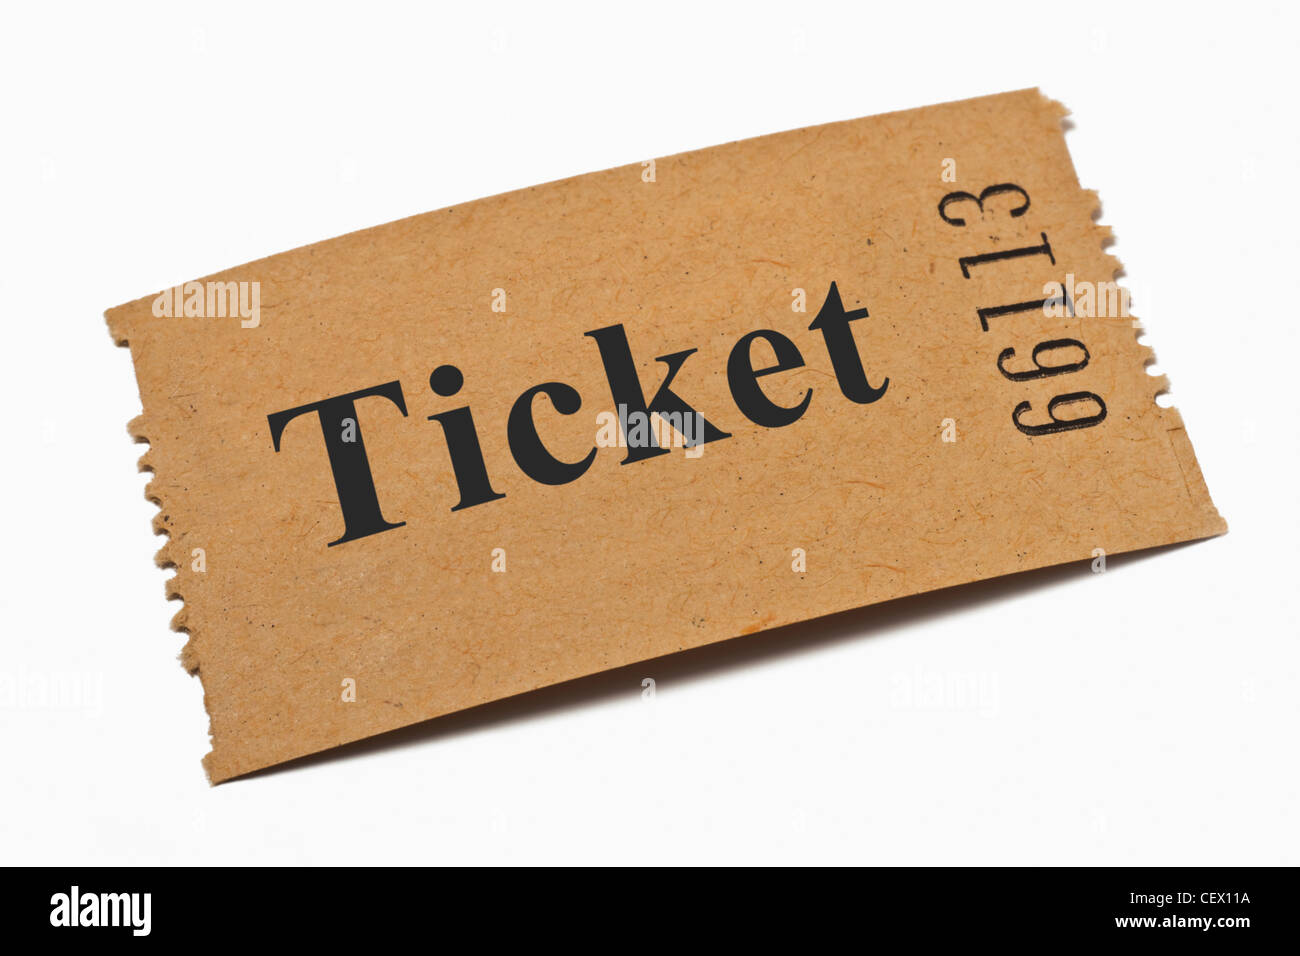 Detailansicht einer Karte aus Papier mit der Aufschrift Ticket | Dettaglio foto di una scheda di carta con la scritta ticket Foto Stock